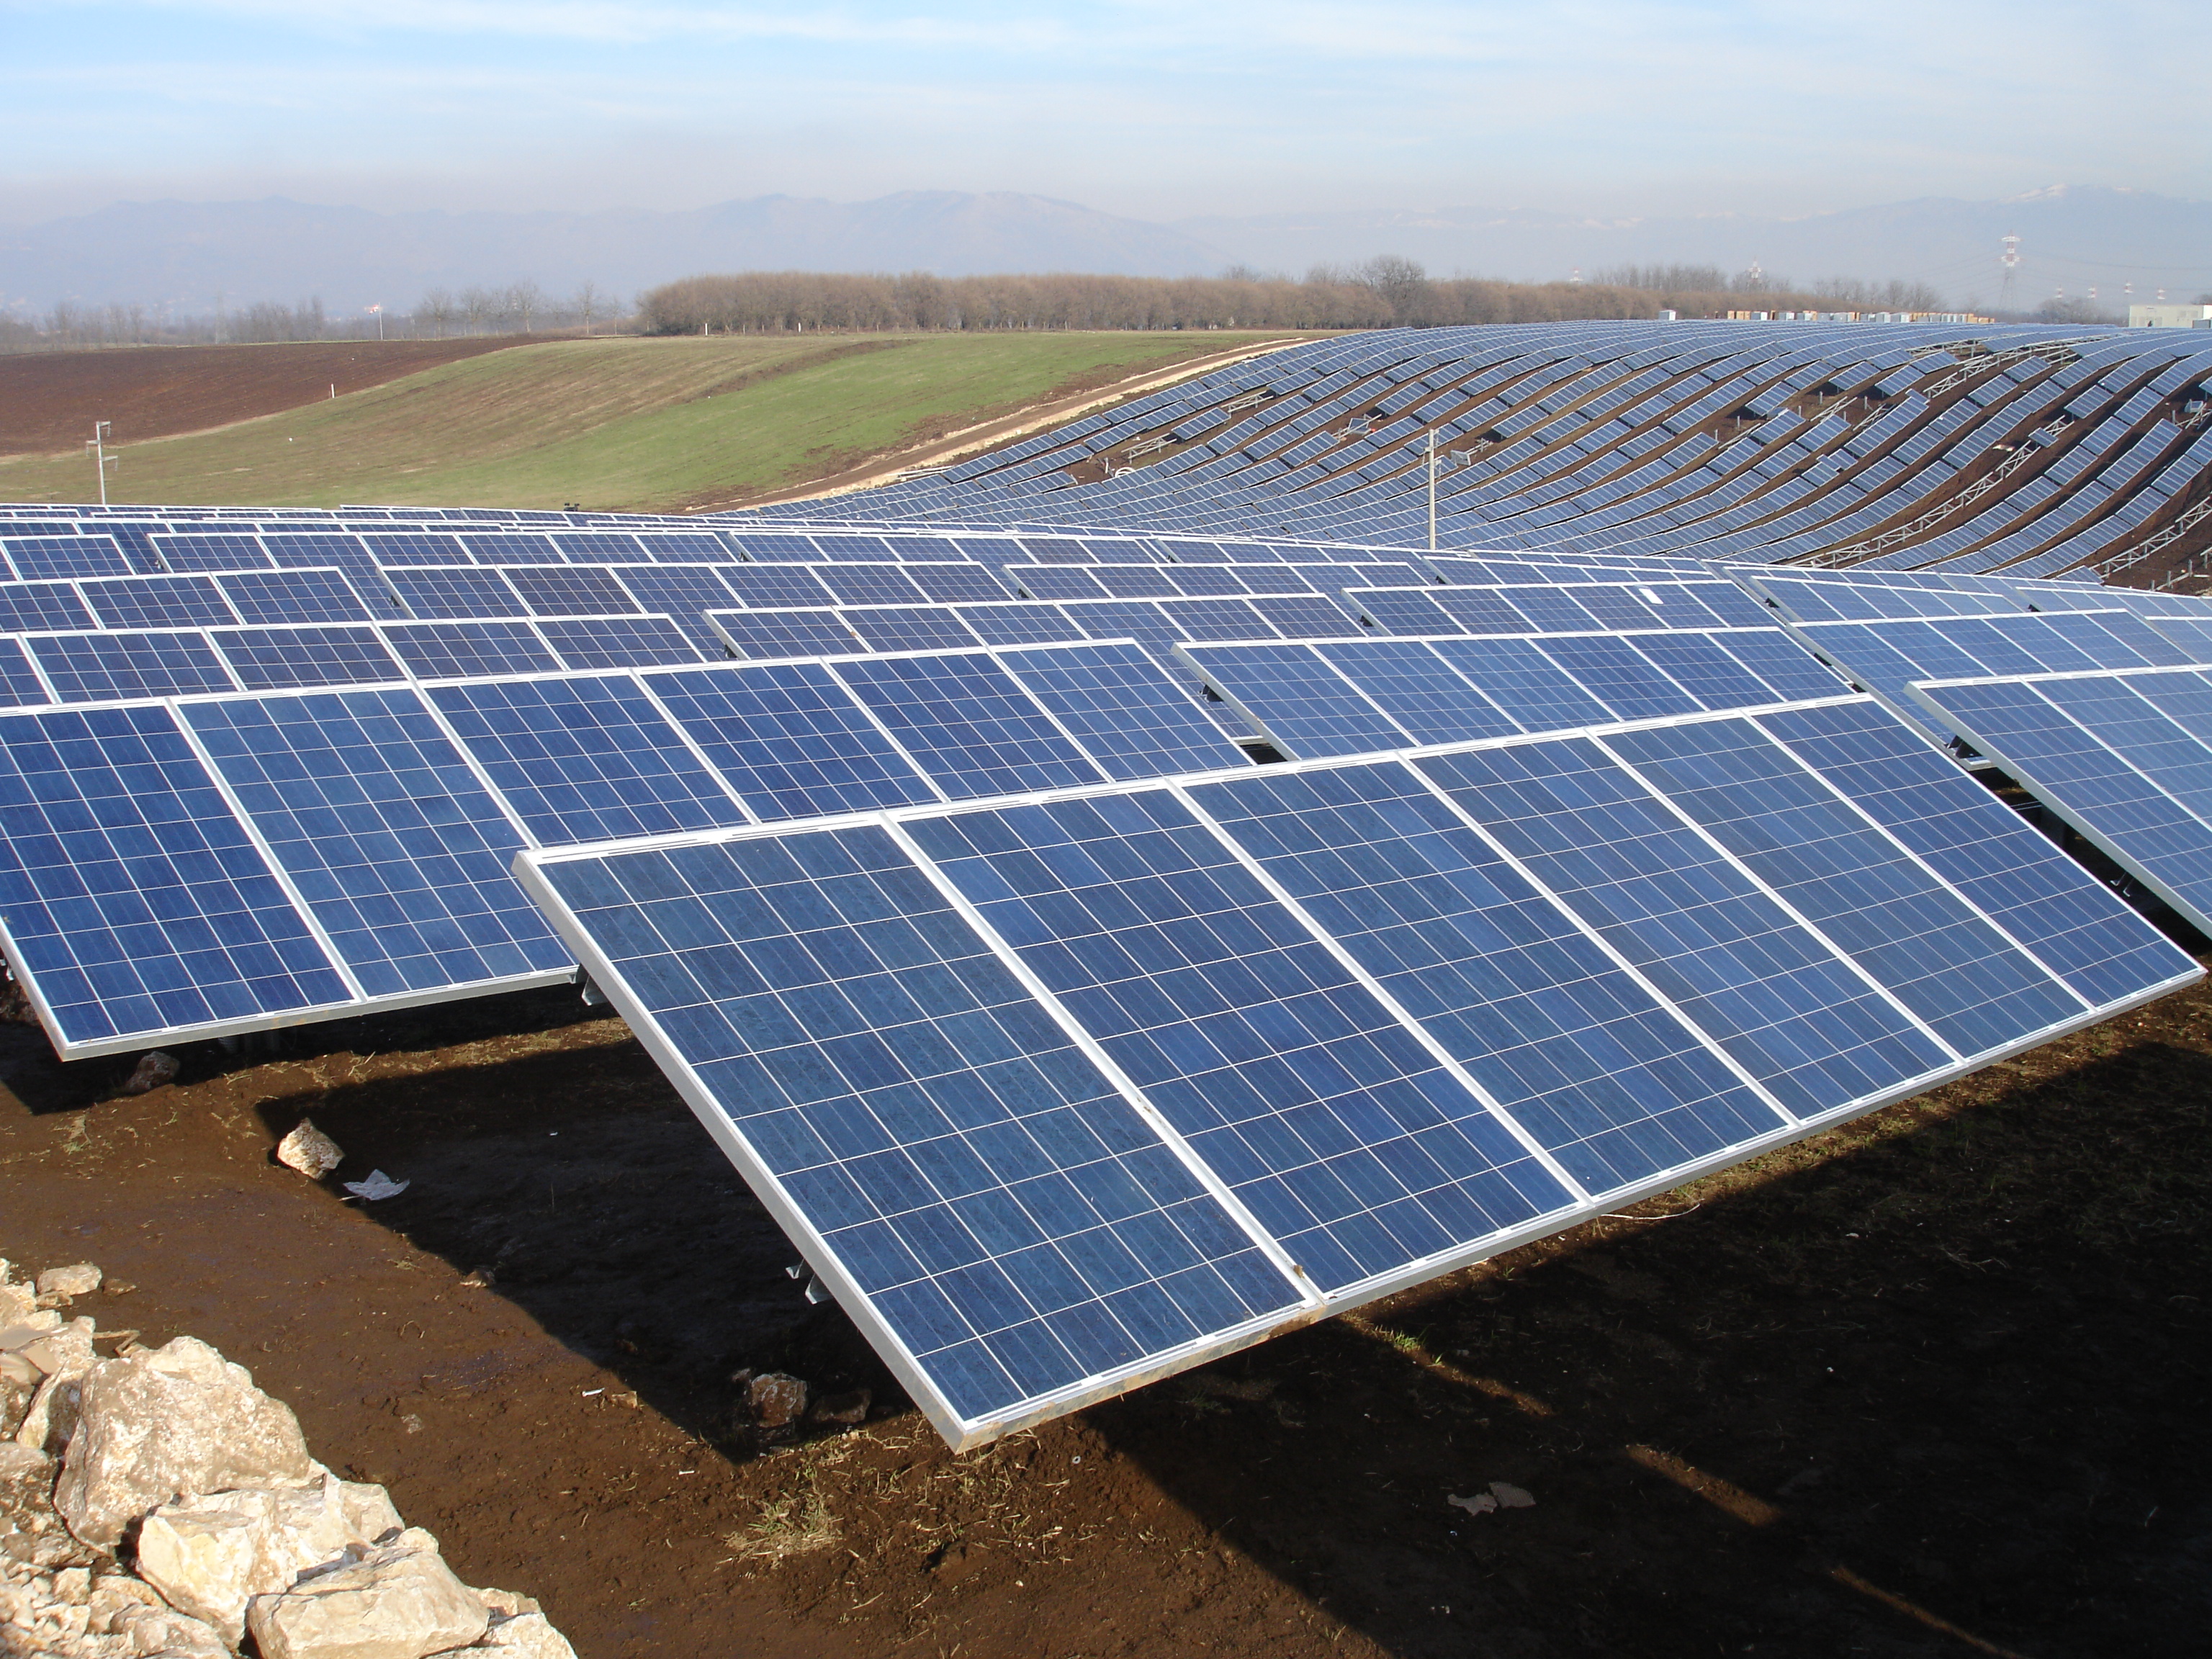 Impianti Solari/Fotovoltaici